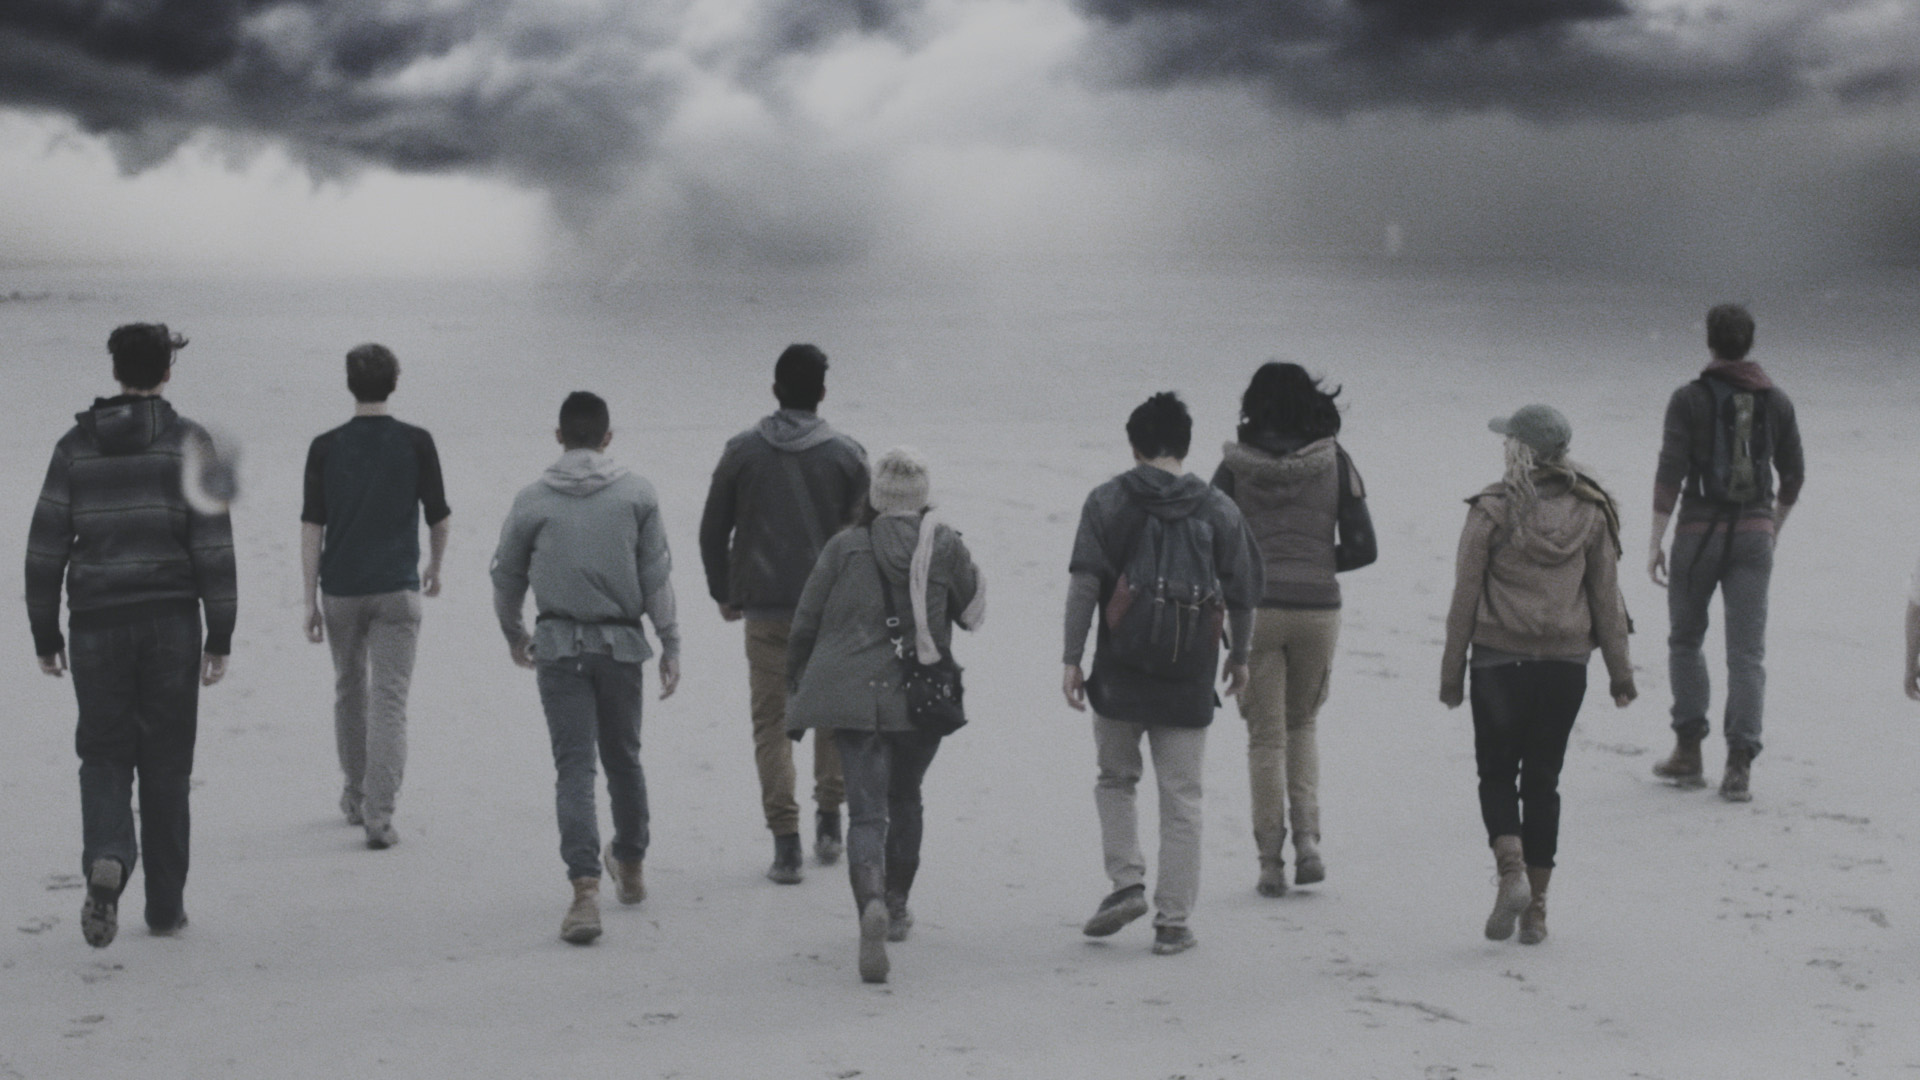 Nine teenagers walk through a fog